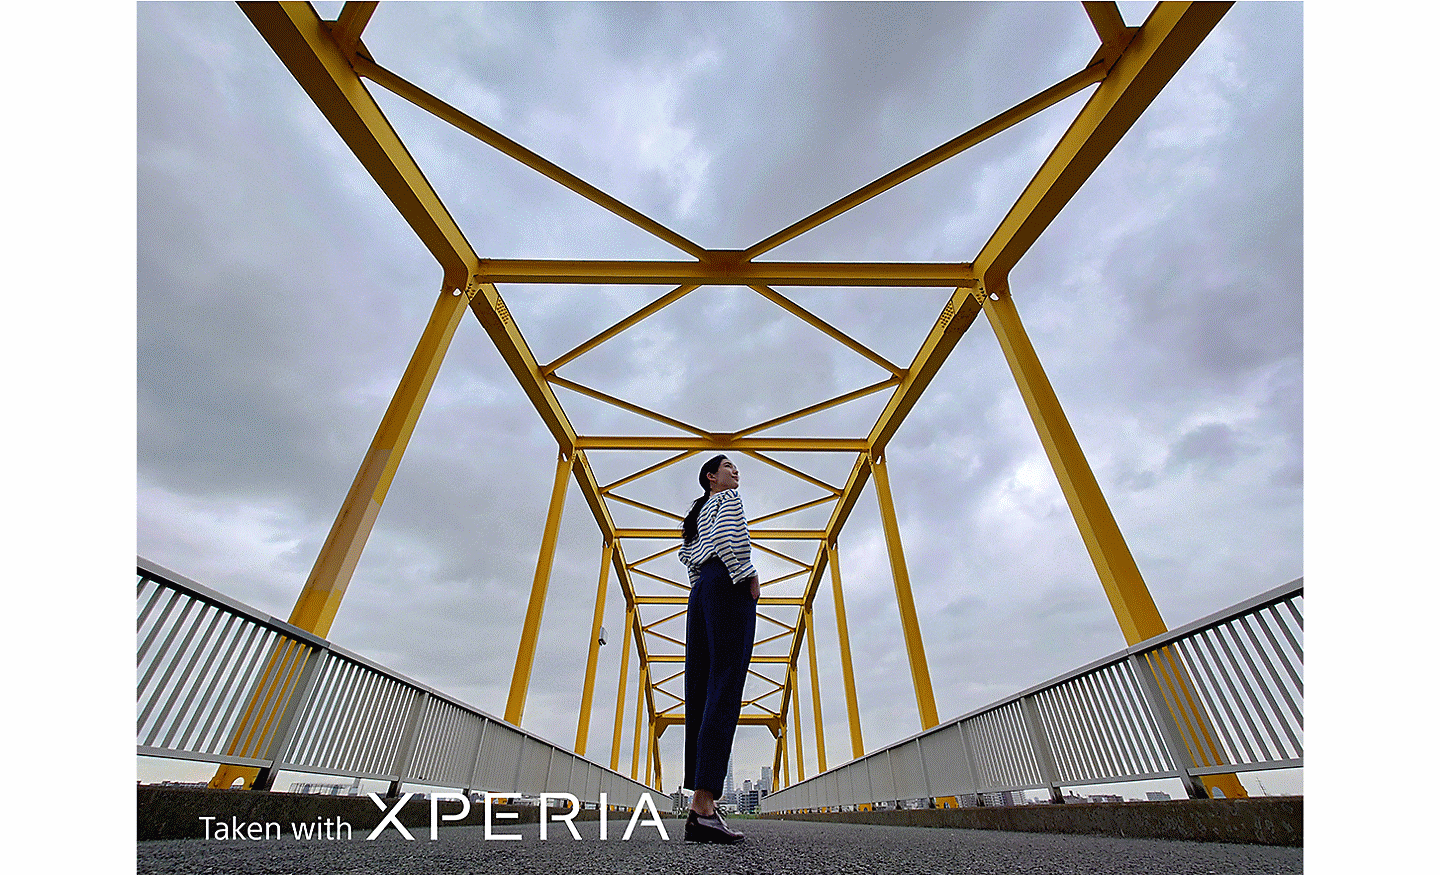 Úchvatná fotografia ženy pózujúcej na kovovom moste. Na fotografii sa nachádza text Taken with XPERIA.